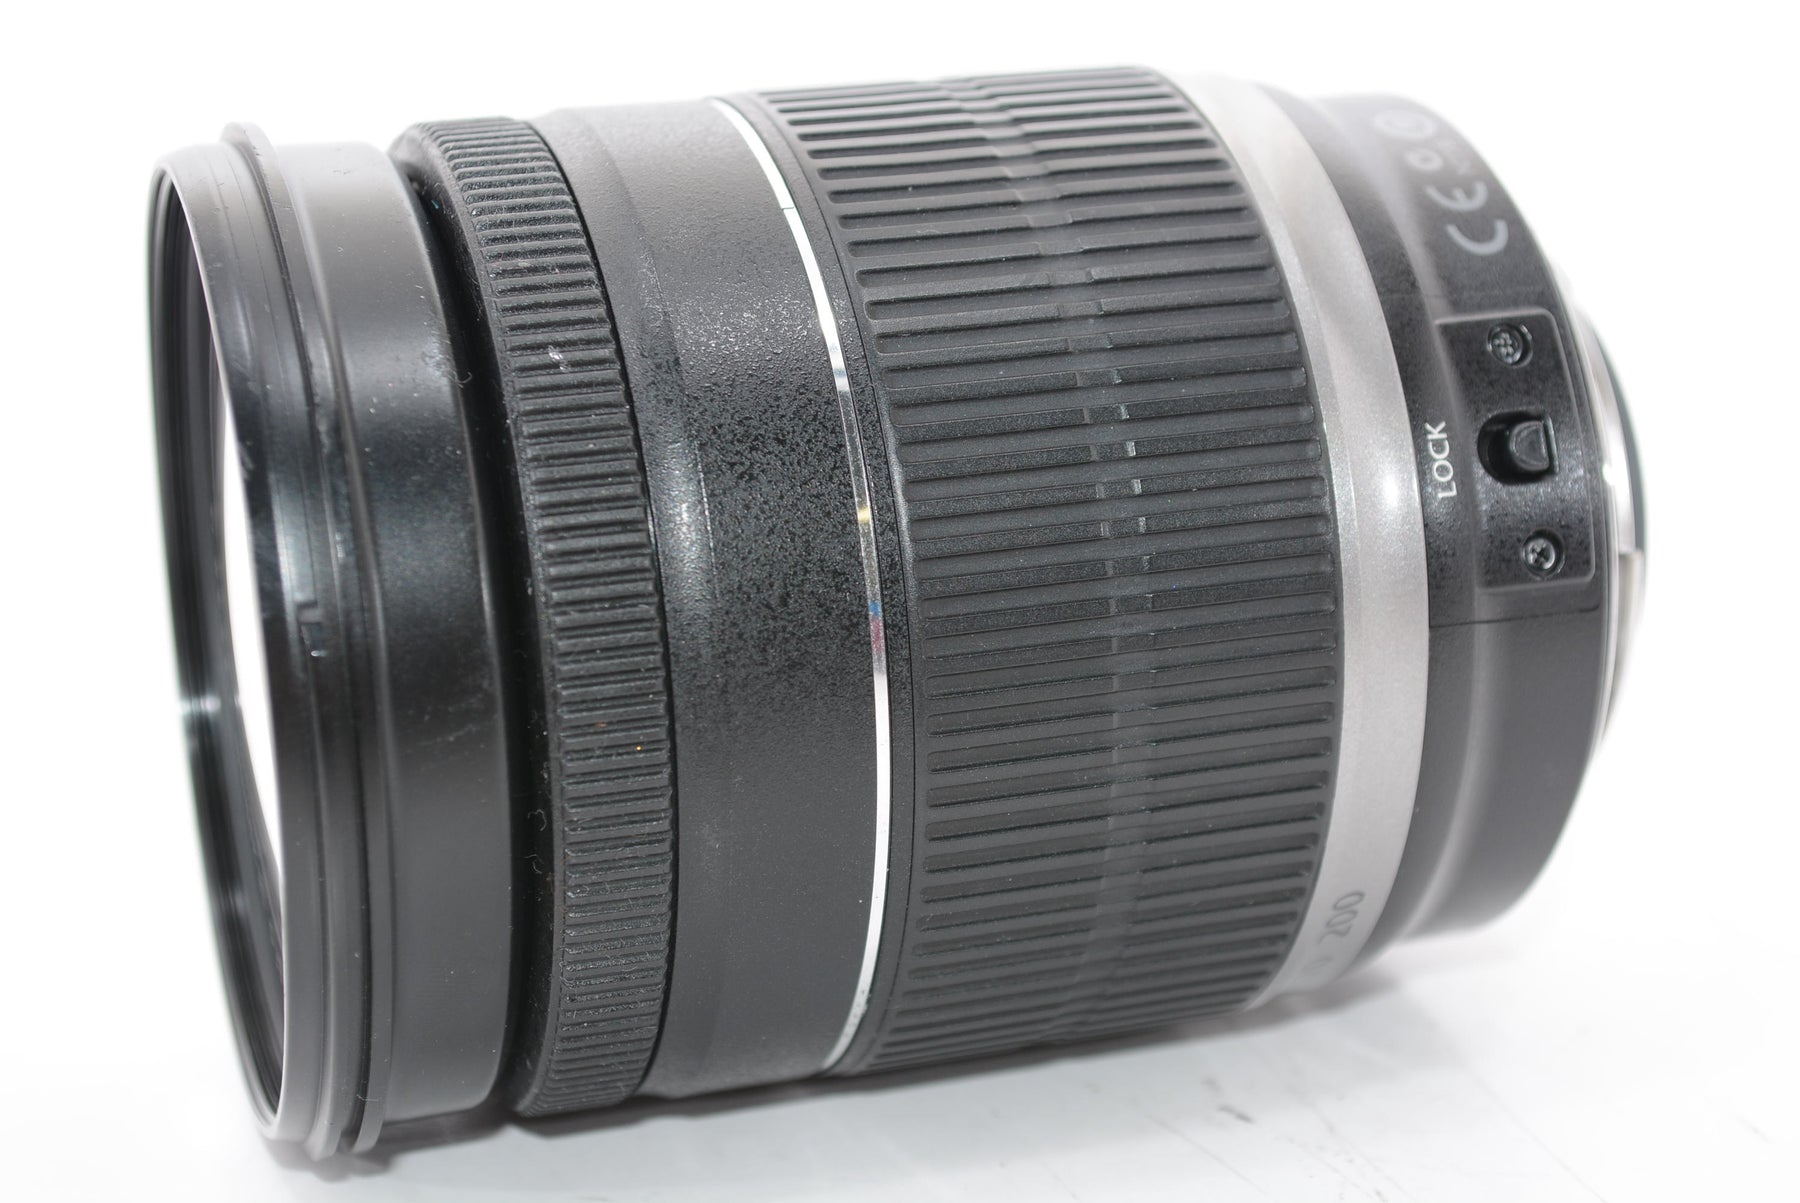 Canon 望遠ズームレンズ EF-S18-200mm F3.5-5.6 IS APS-C対応